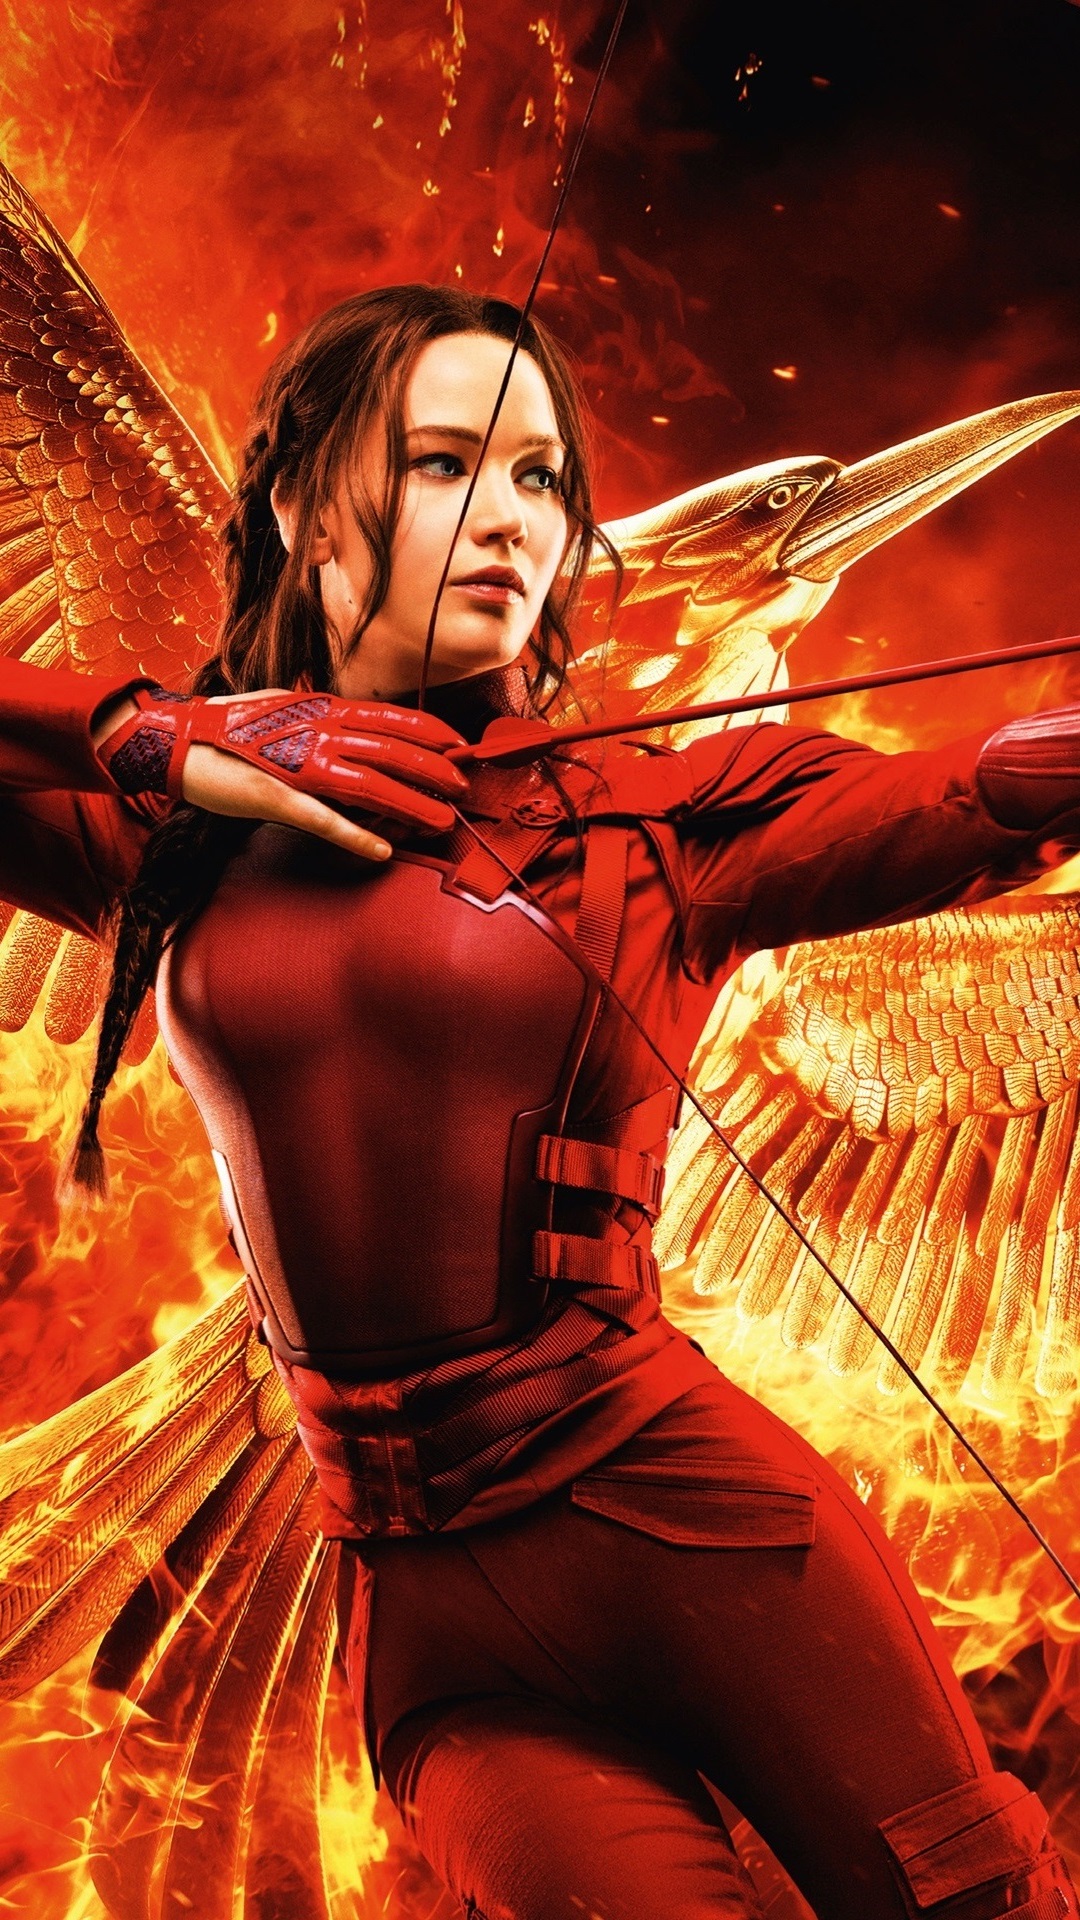 Iphone Wallpaper Jennifer Lawrence, The Hunger Games - Katniss Everdeen Wallpaper Iphone - HD Wallpaper 